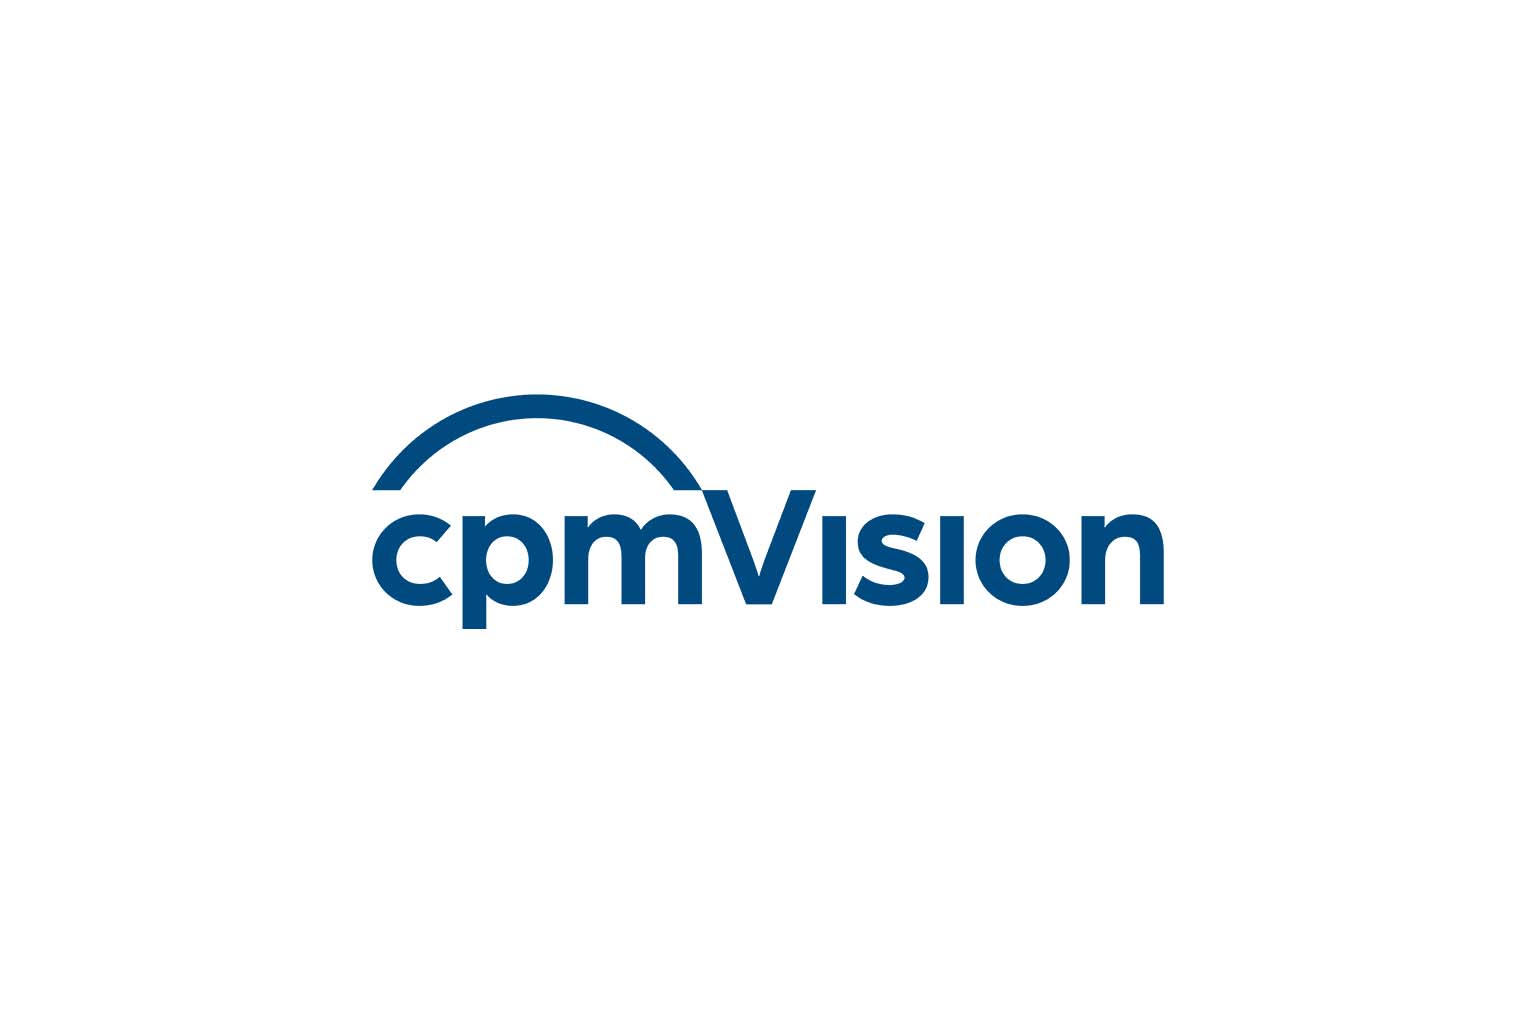 cpm vision logo